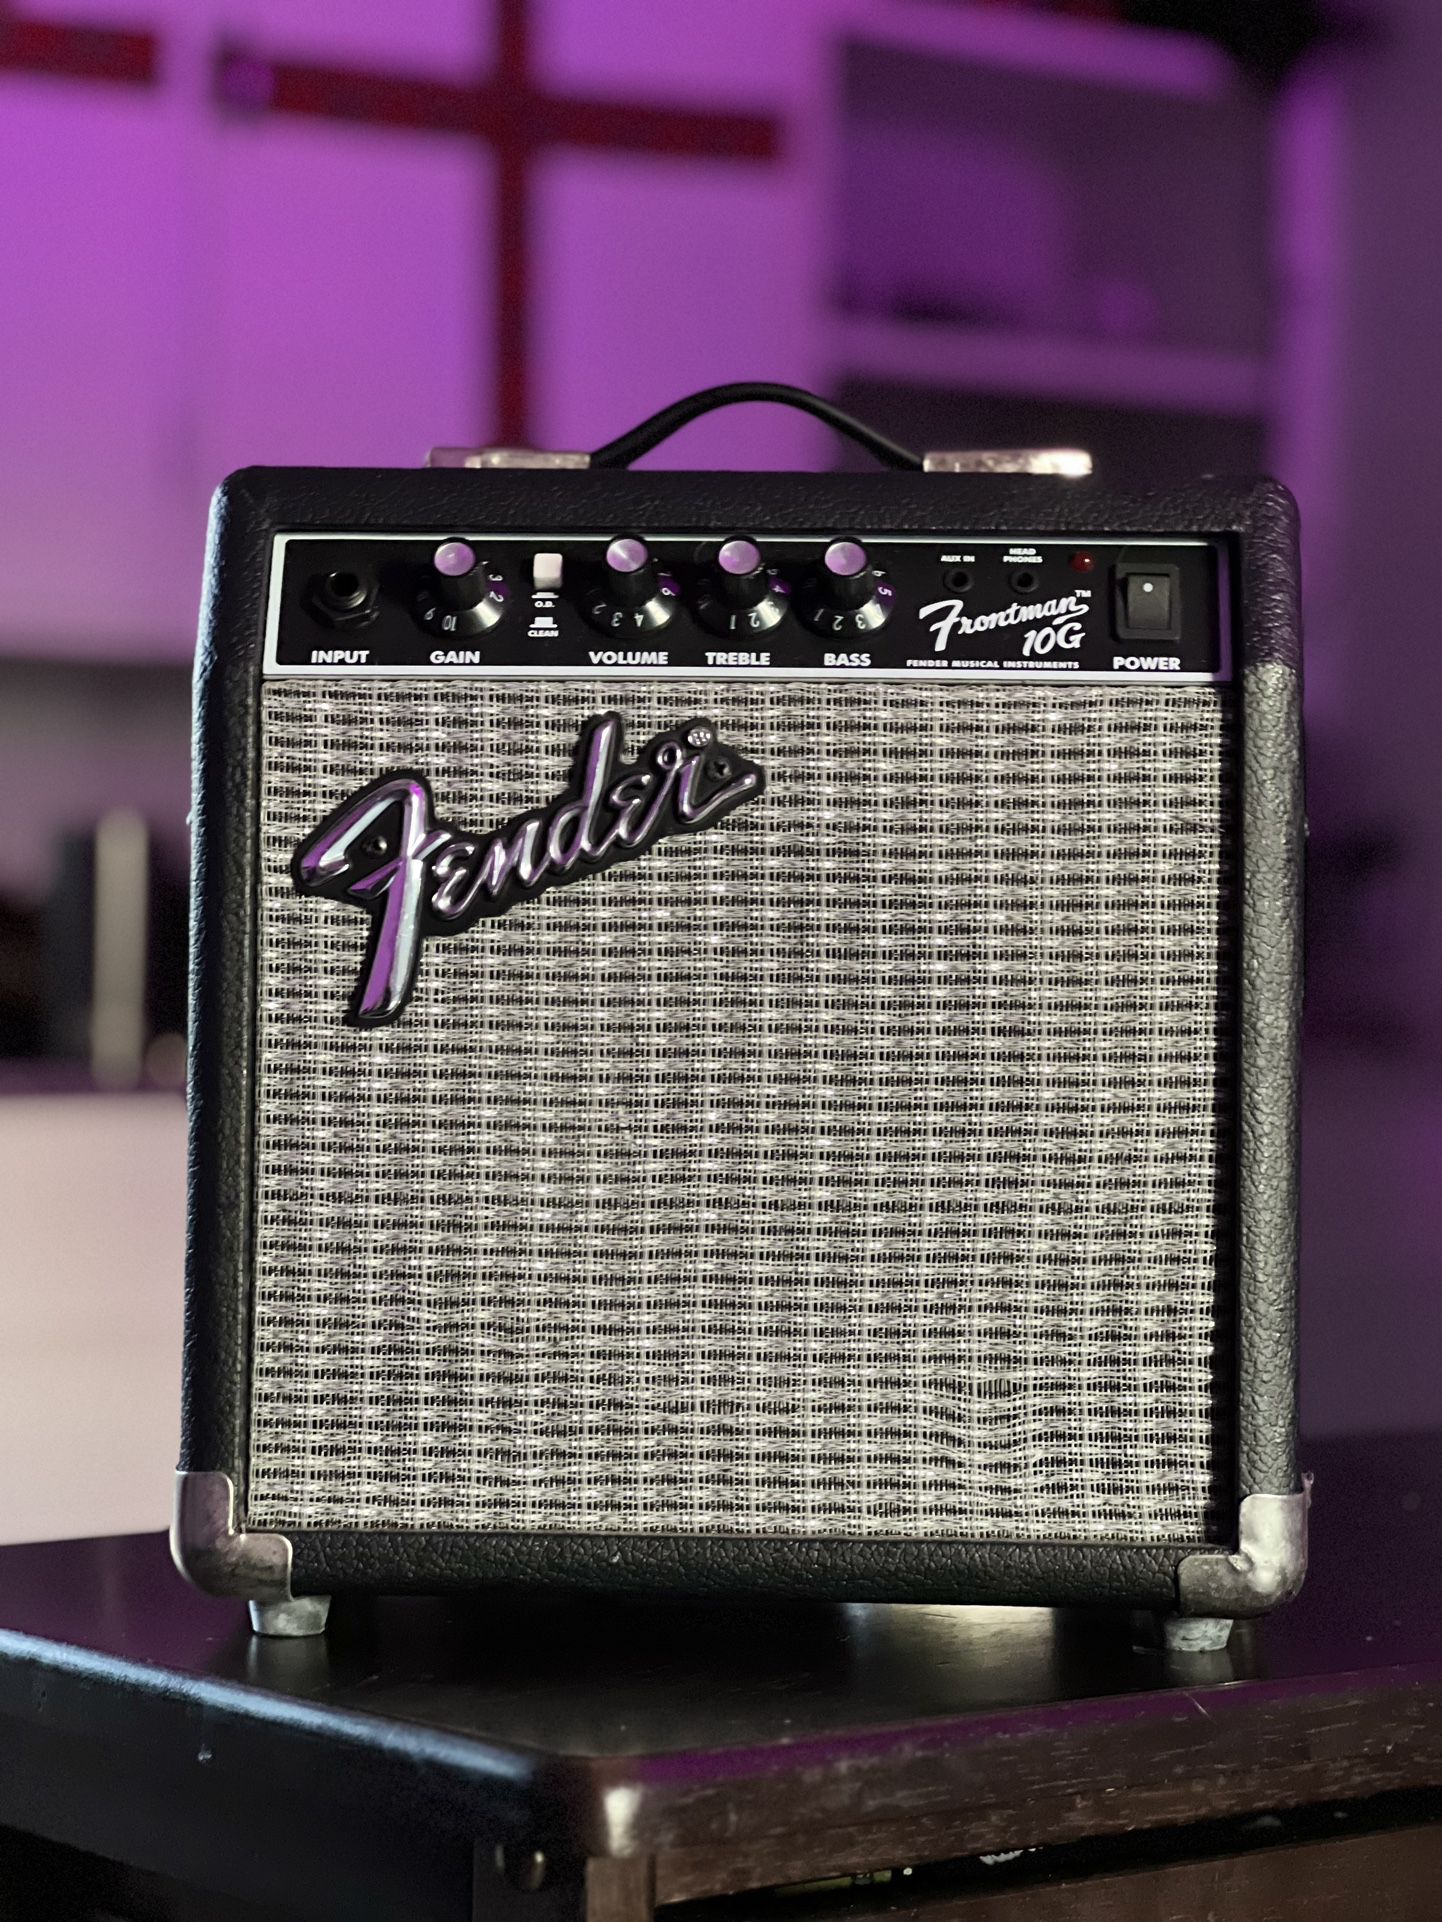 Fender Frontman 10G 10-watt guitar amp